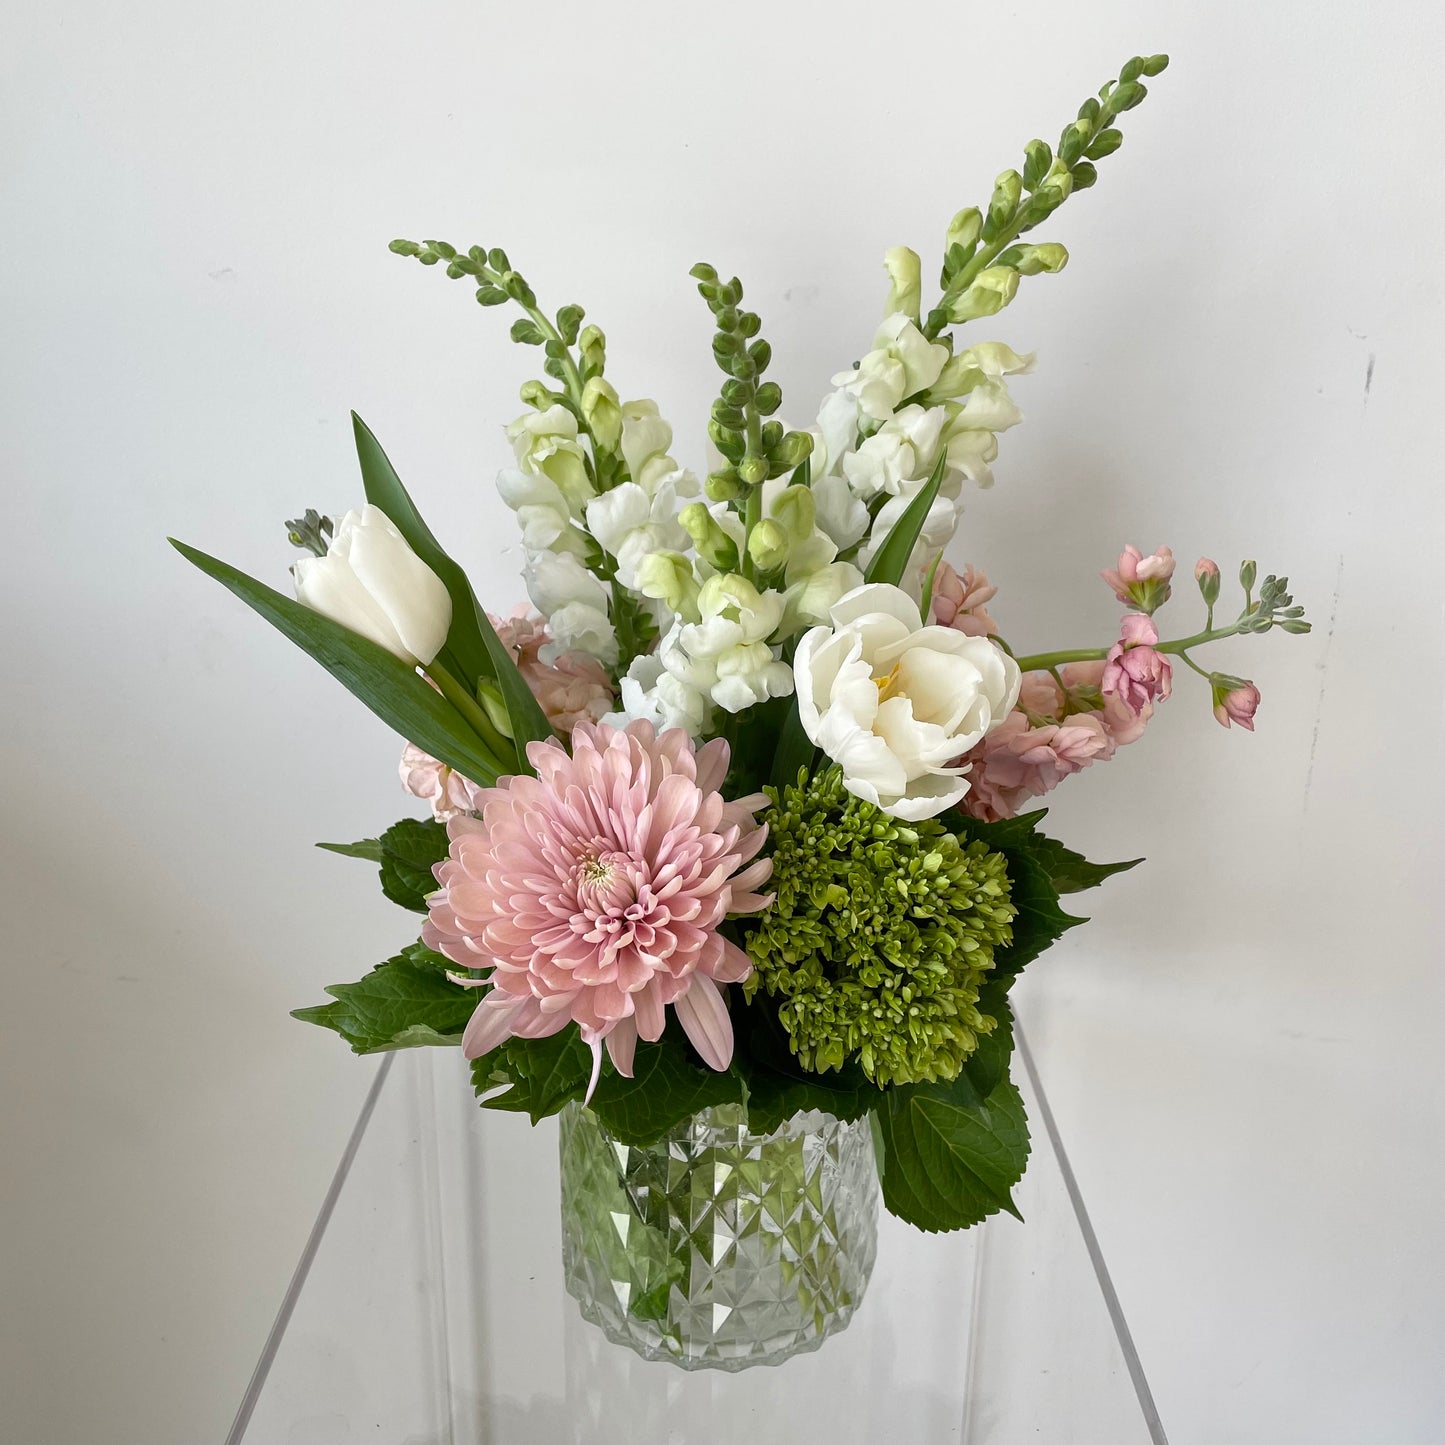 Blooming Vase Arrangement